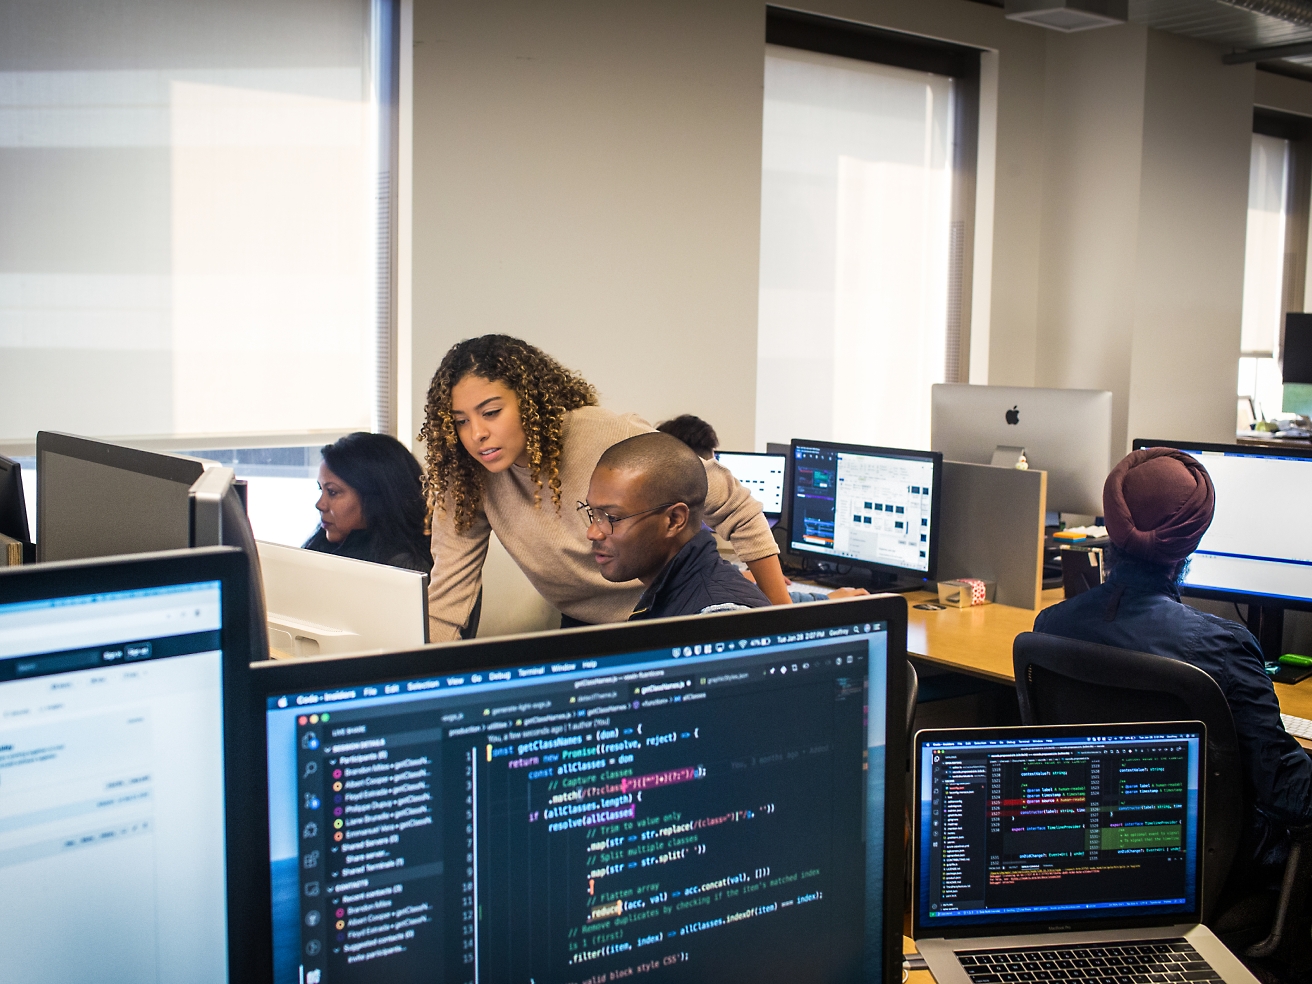 En grupp personer arbetar på datorer i en kontorsmiljö och tittar fokuserat på skärmar som visar kod och data.